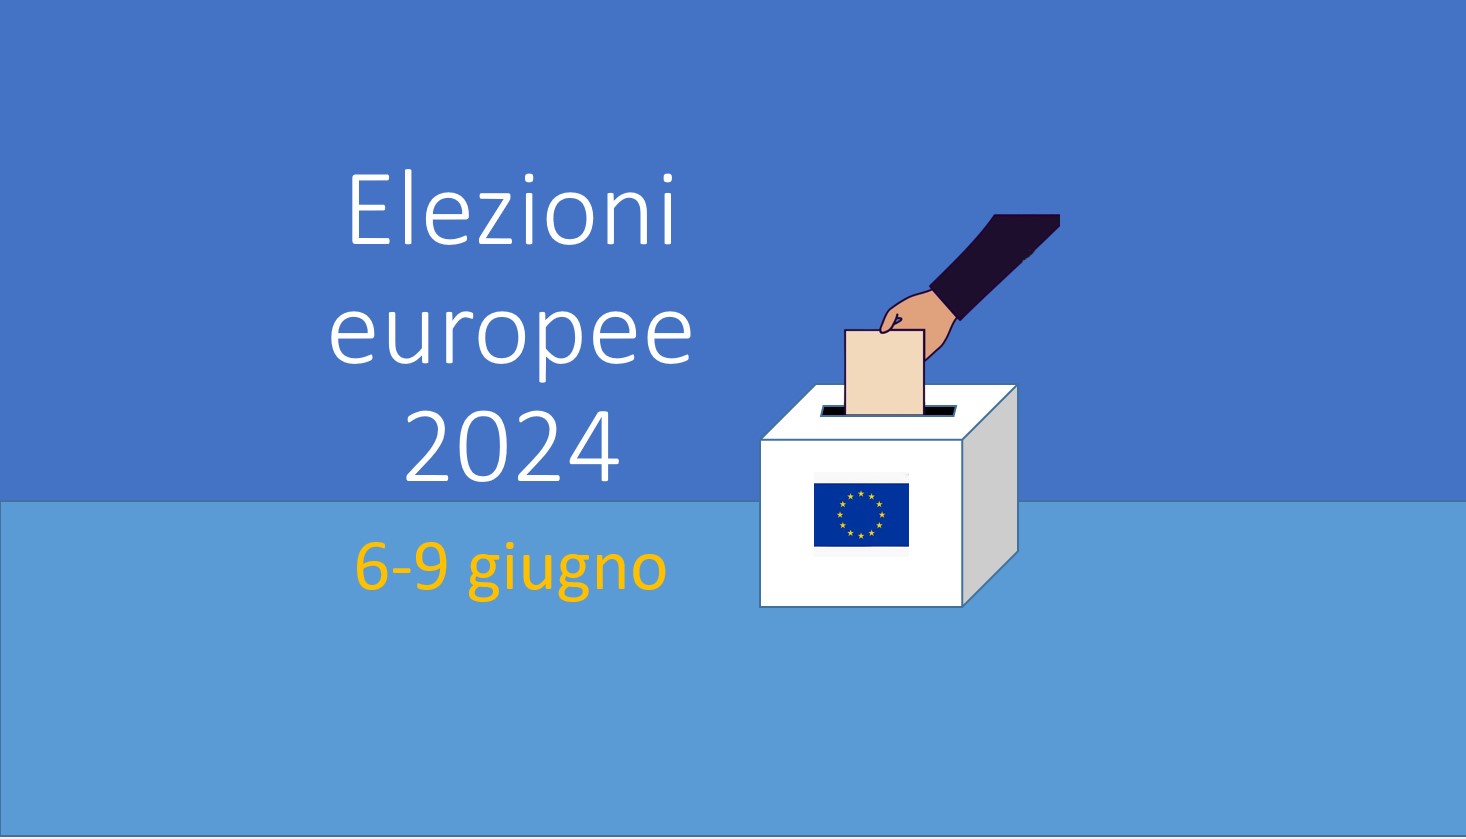 Elezioni europee 2024 - Elezione dei Membri del Parlamento Europeo.